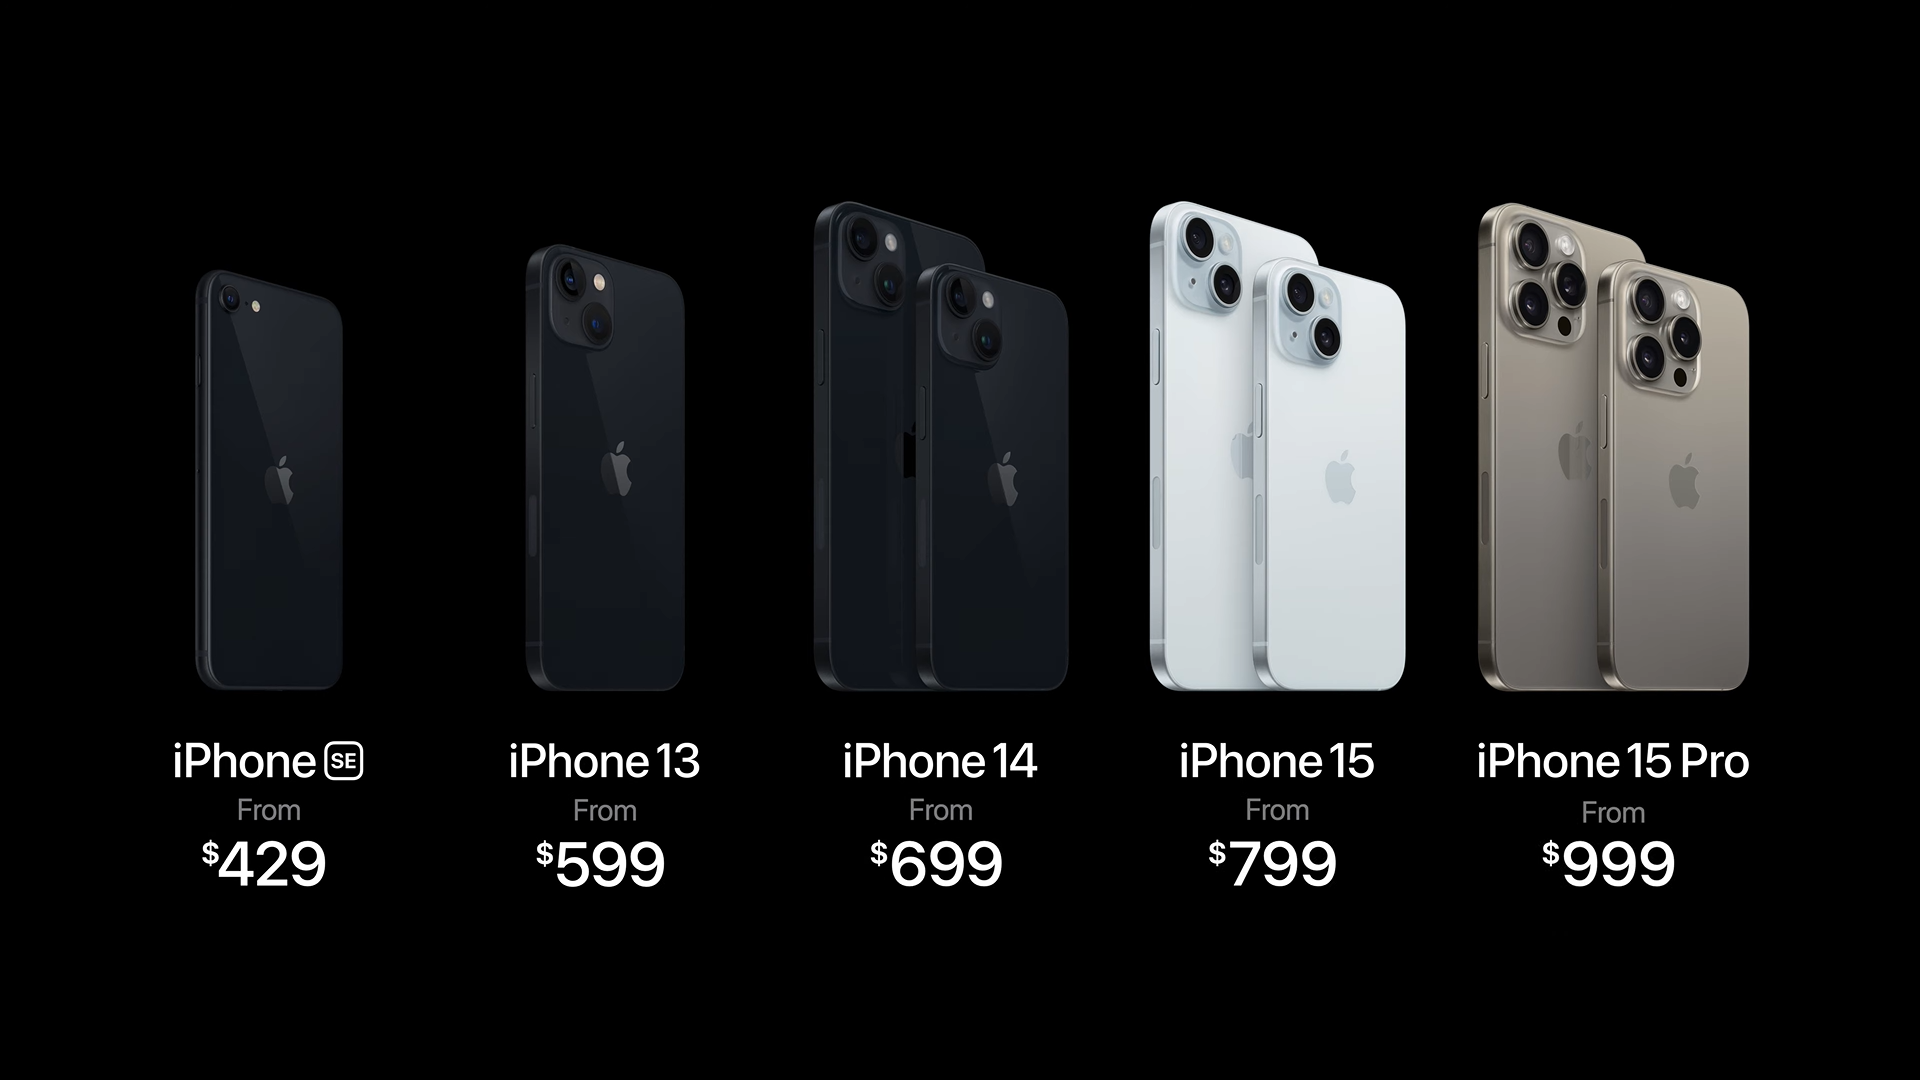 Giá bán iPhone 15 so với các thiết bị tiền nhiệm.